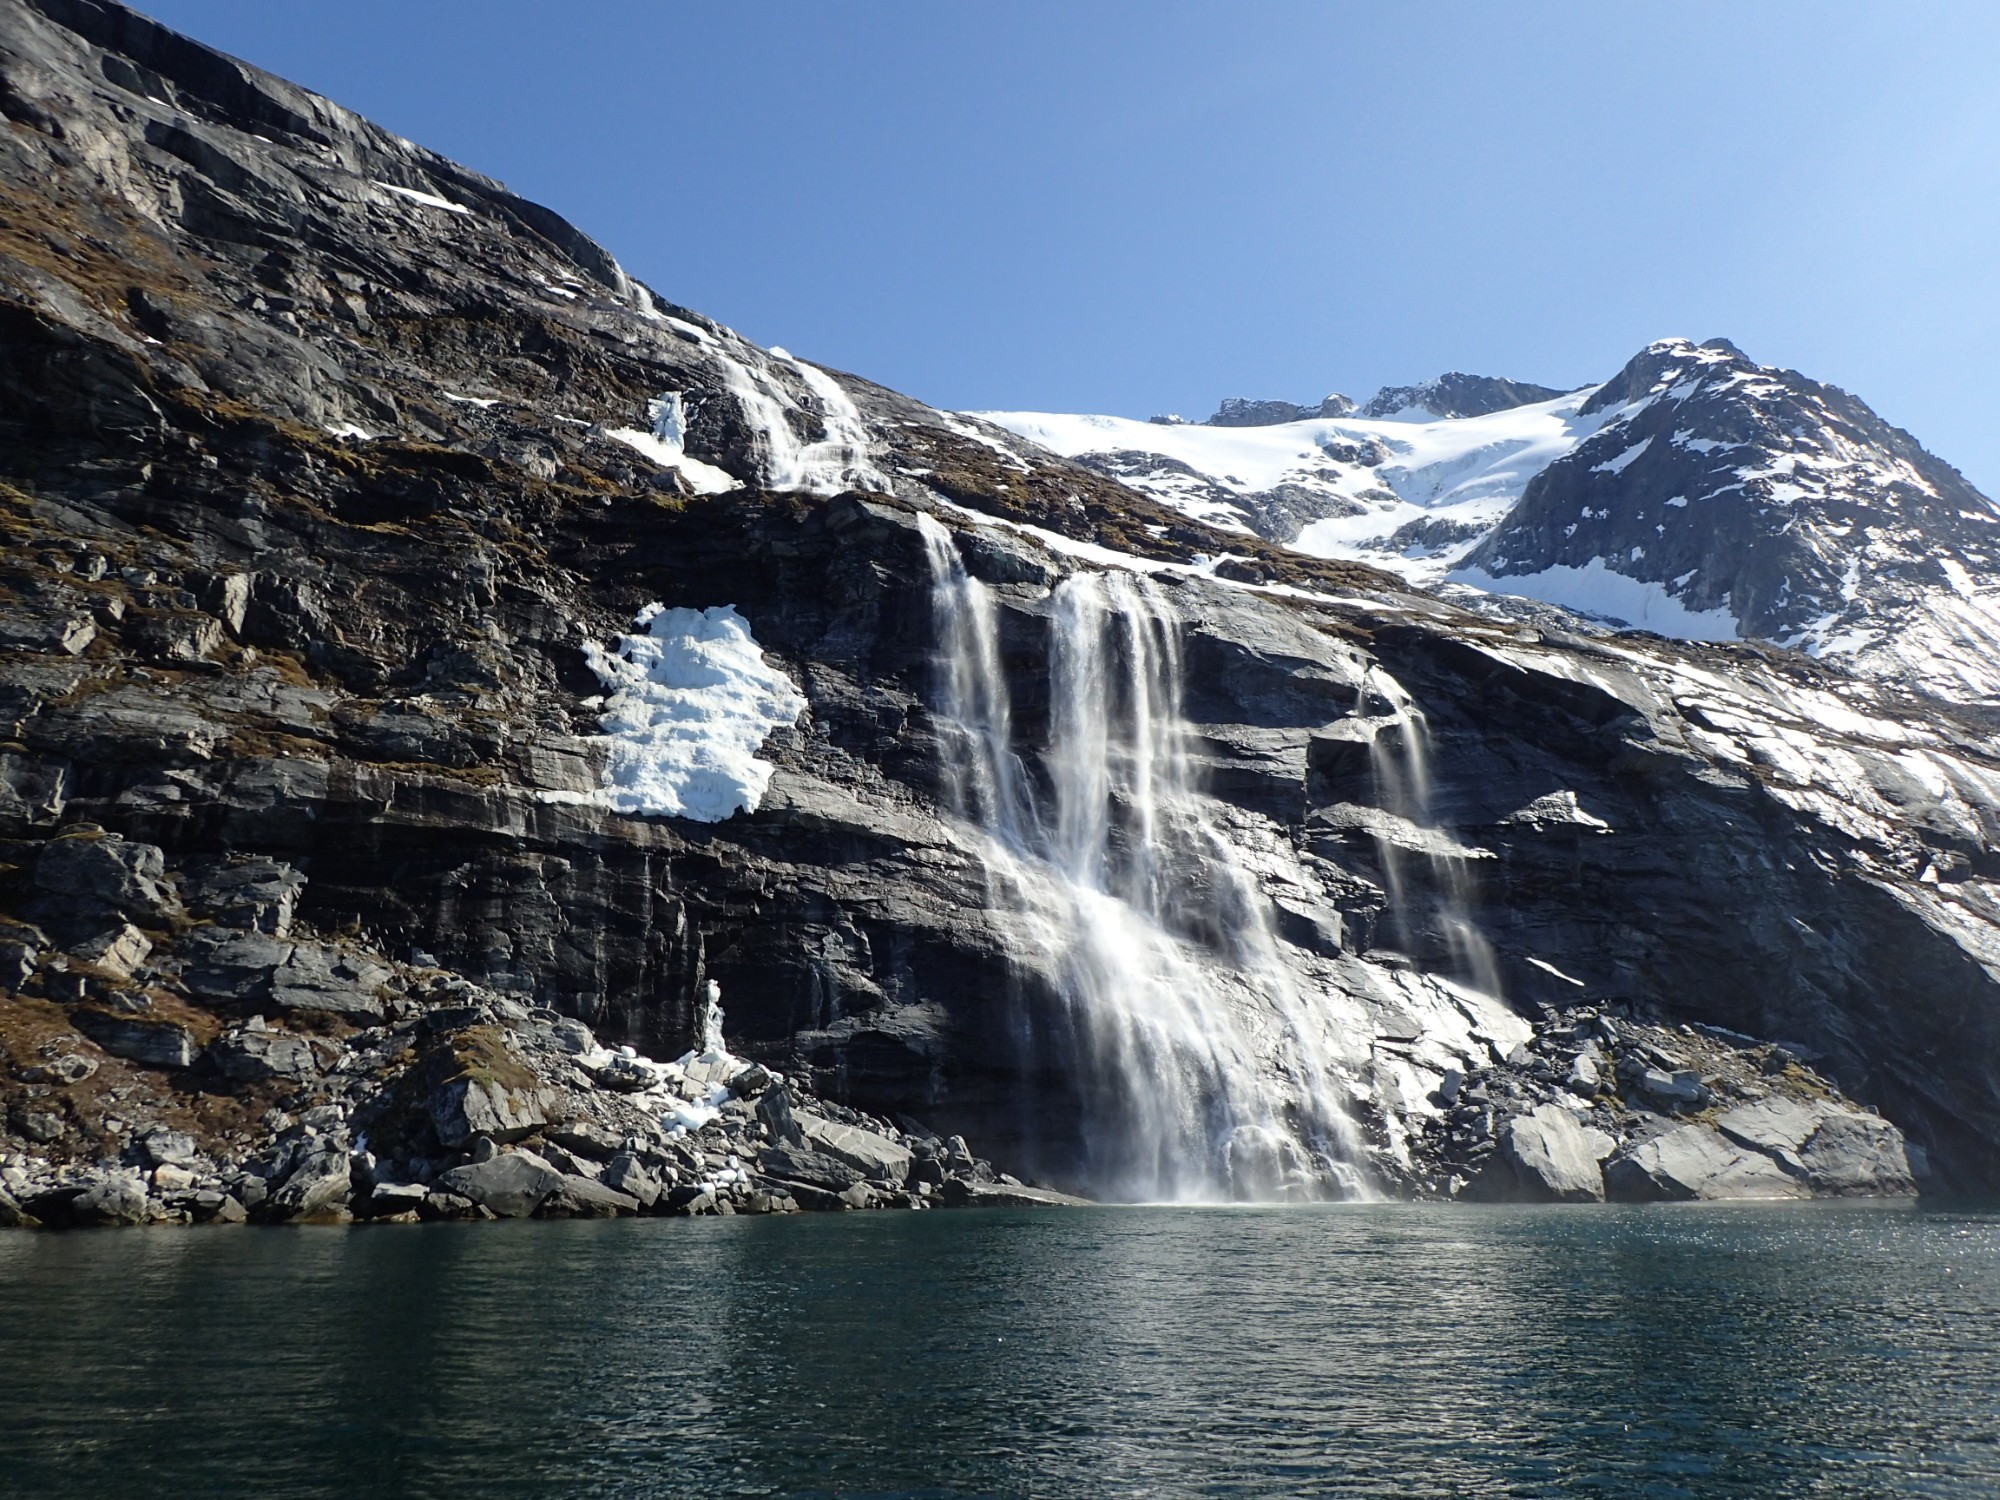 Waterfalls at Sadelo, Greenland